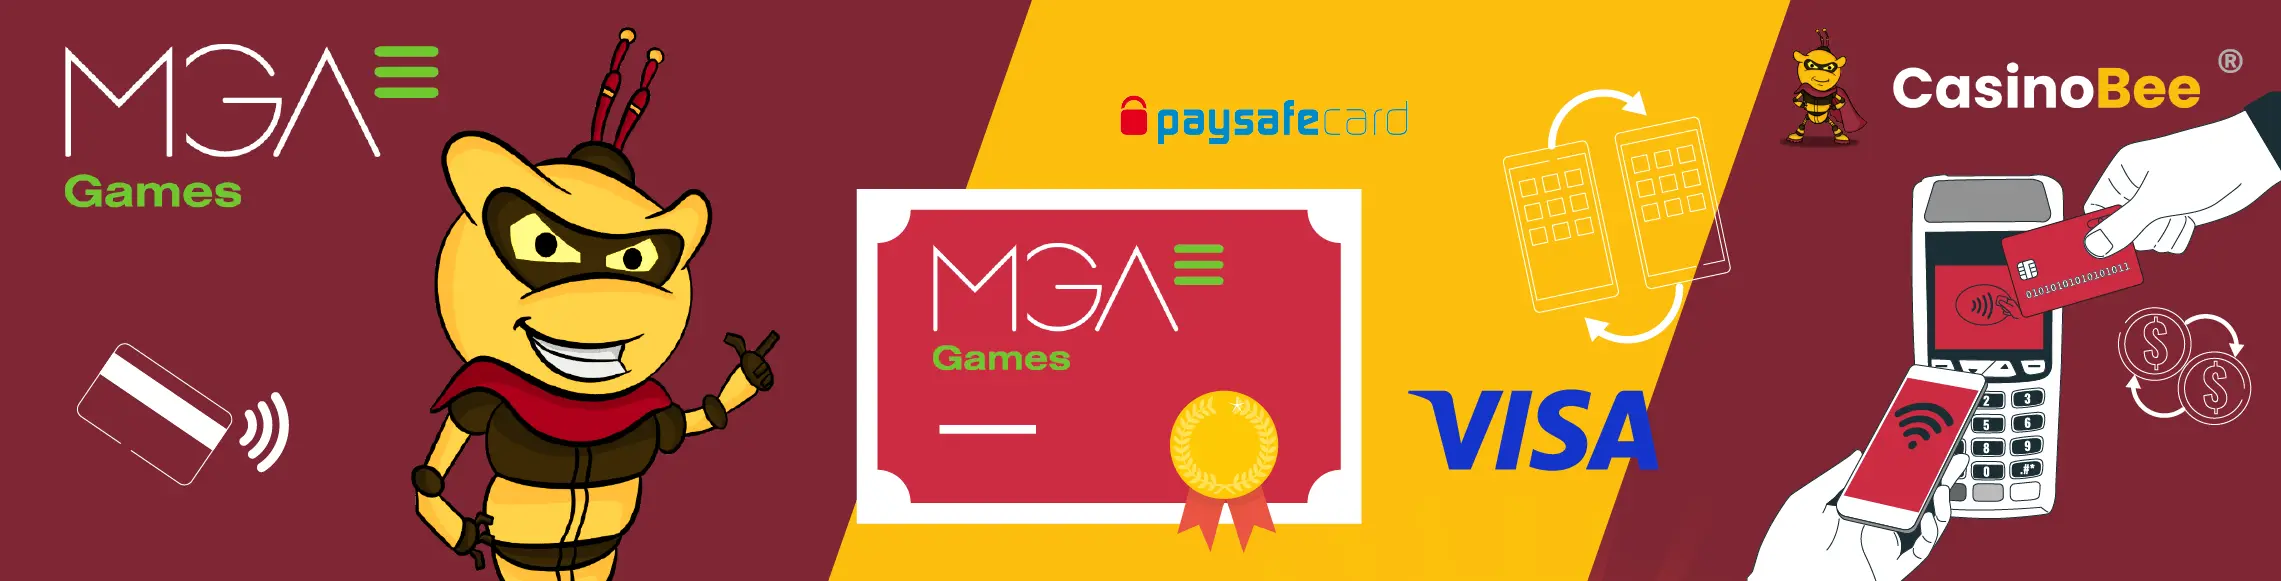 MGA Casinos payments